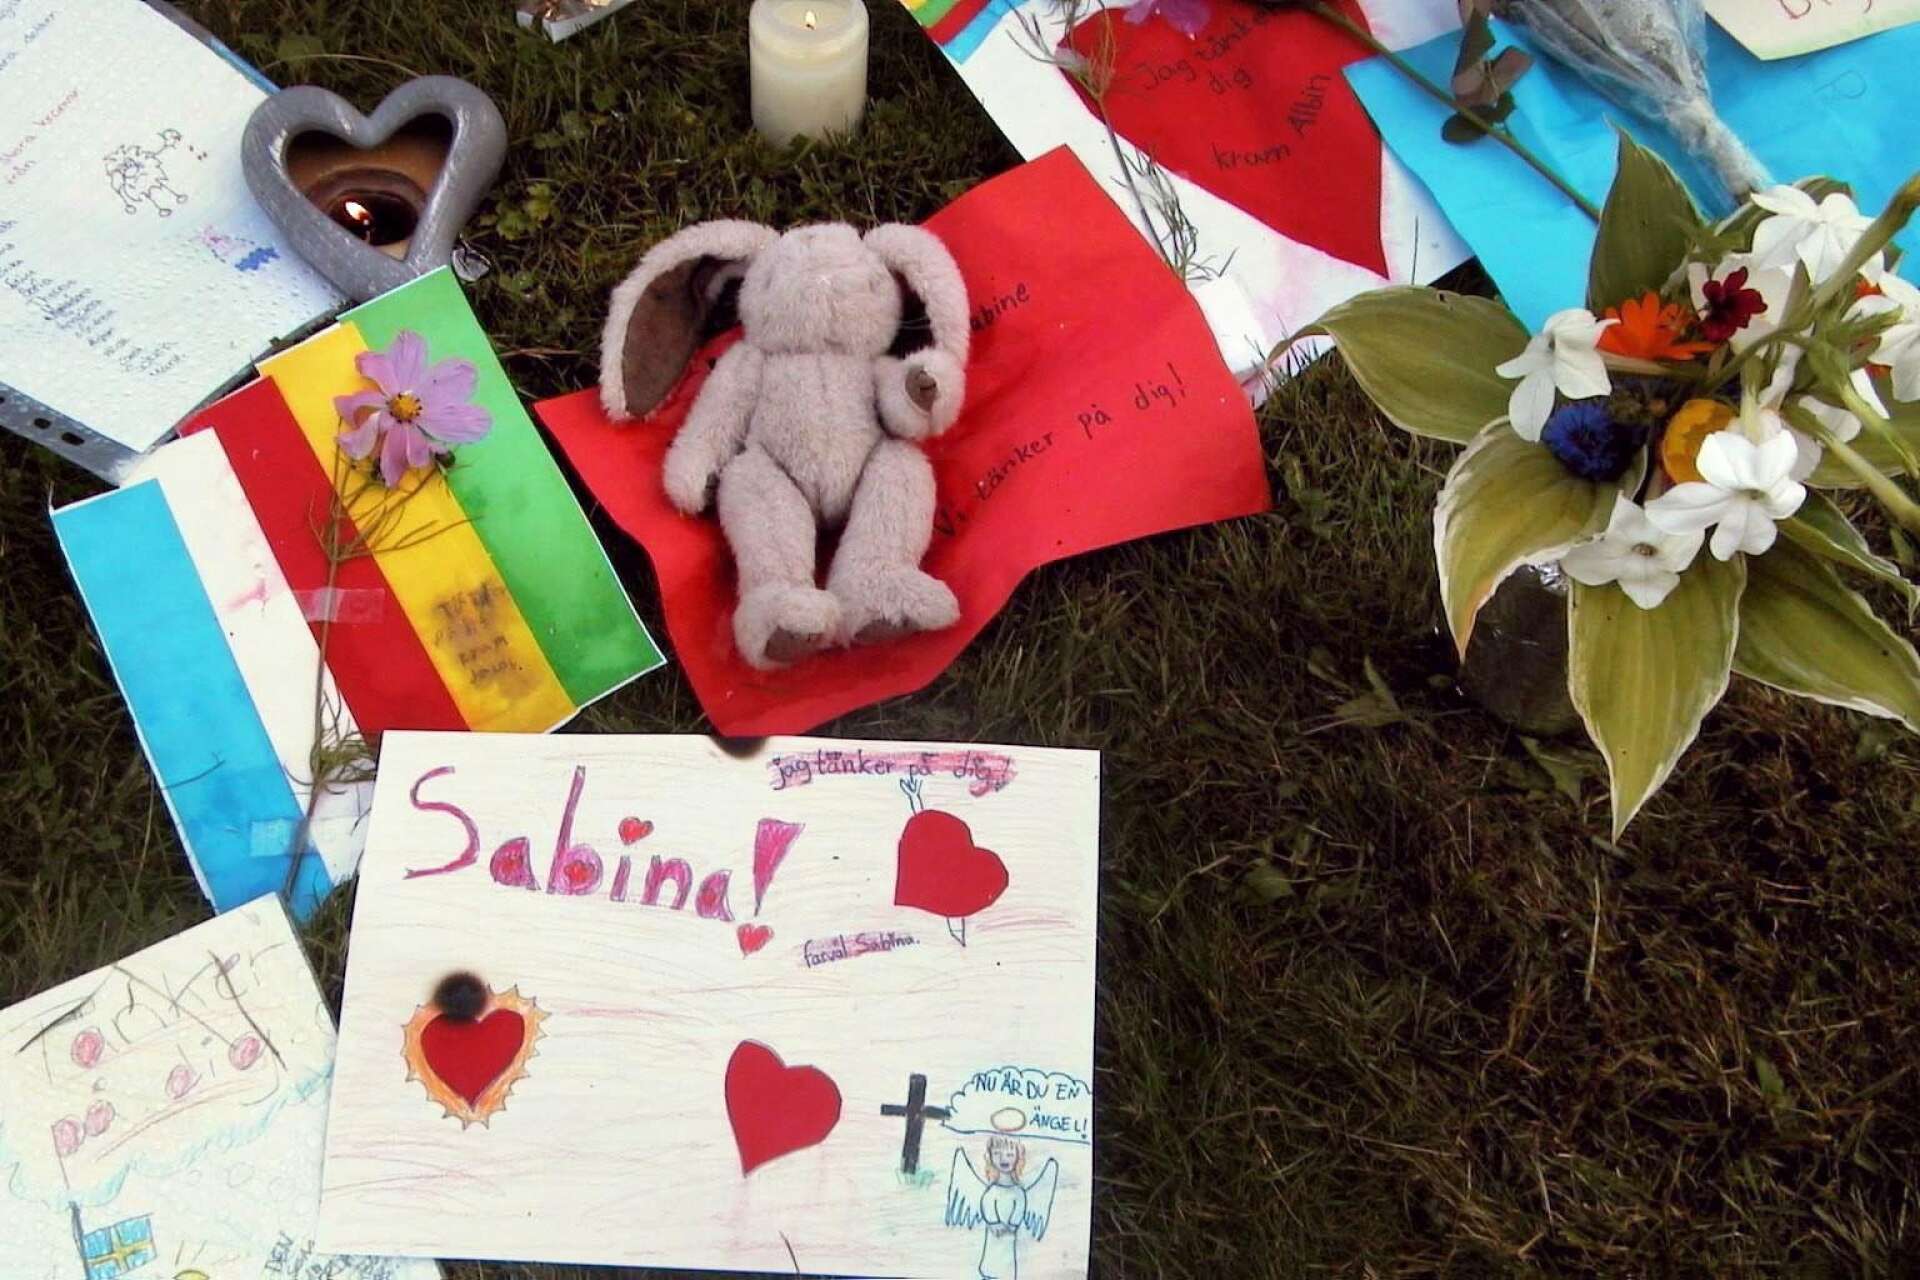 Hundratals människor la ned blommor, gosedjur och tända ljus utanför Gategårdens förskola till minne av Sabina.